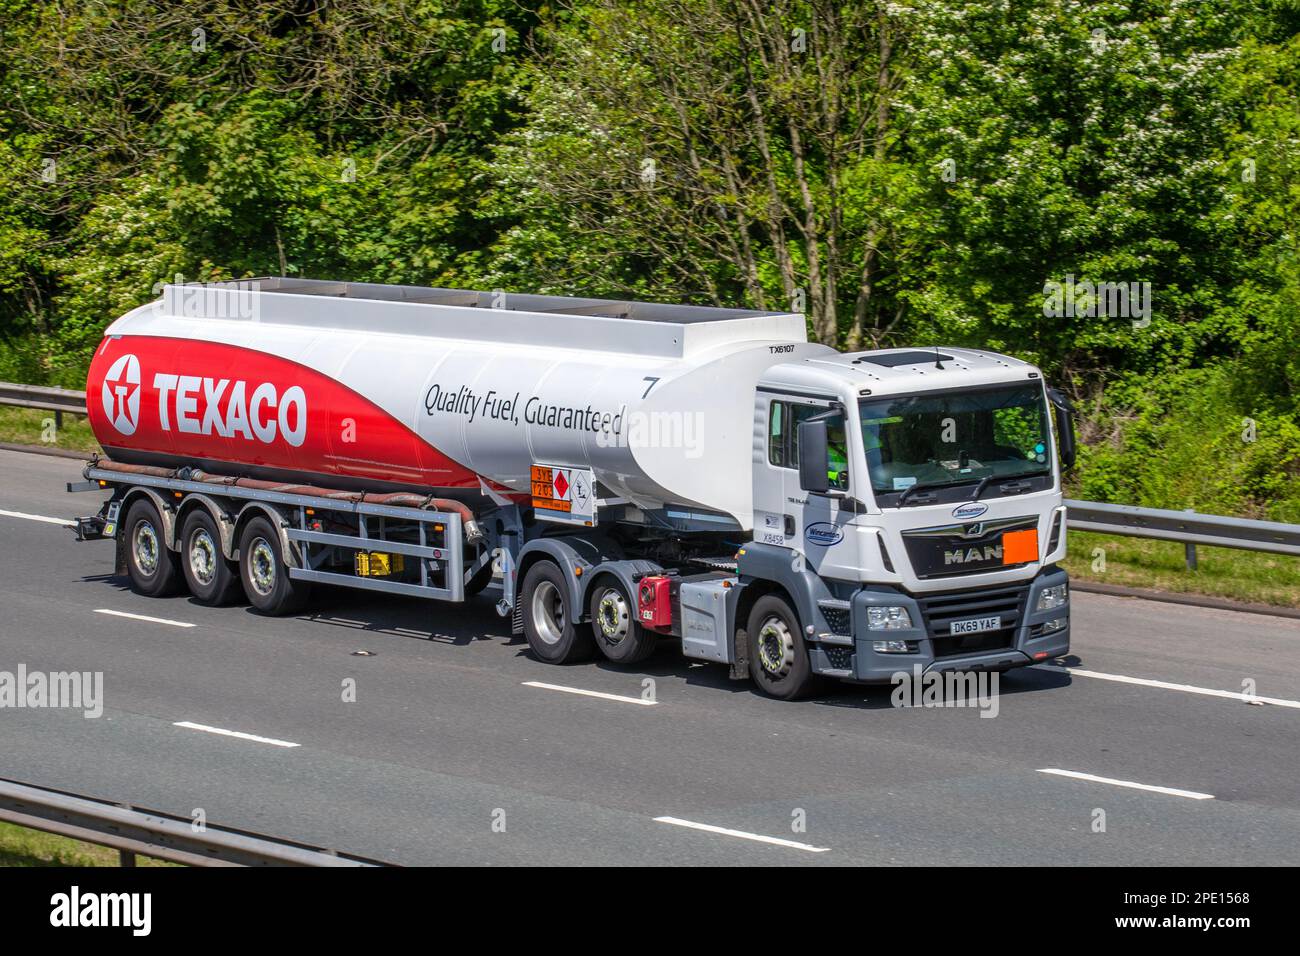 2019 rouge blanc MAN TGS (My2018) 12419cc Diesel Texaco fuel Tanker, Quality Fuel Guaranteed, livraison sur l'autoroute M61 Royaume-Uni Banque D'Images